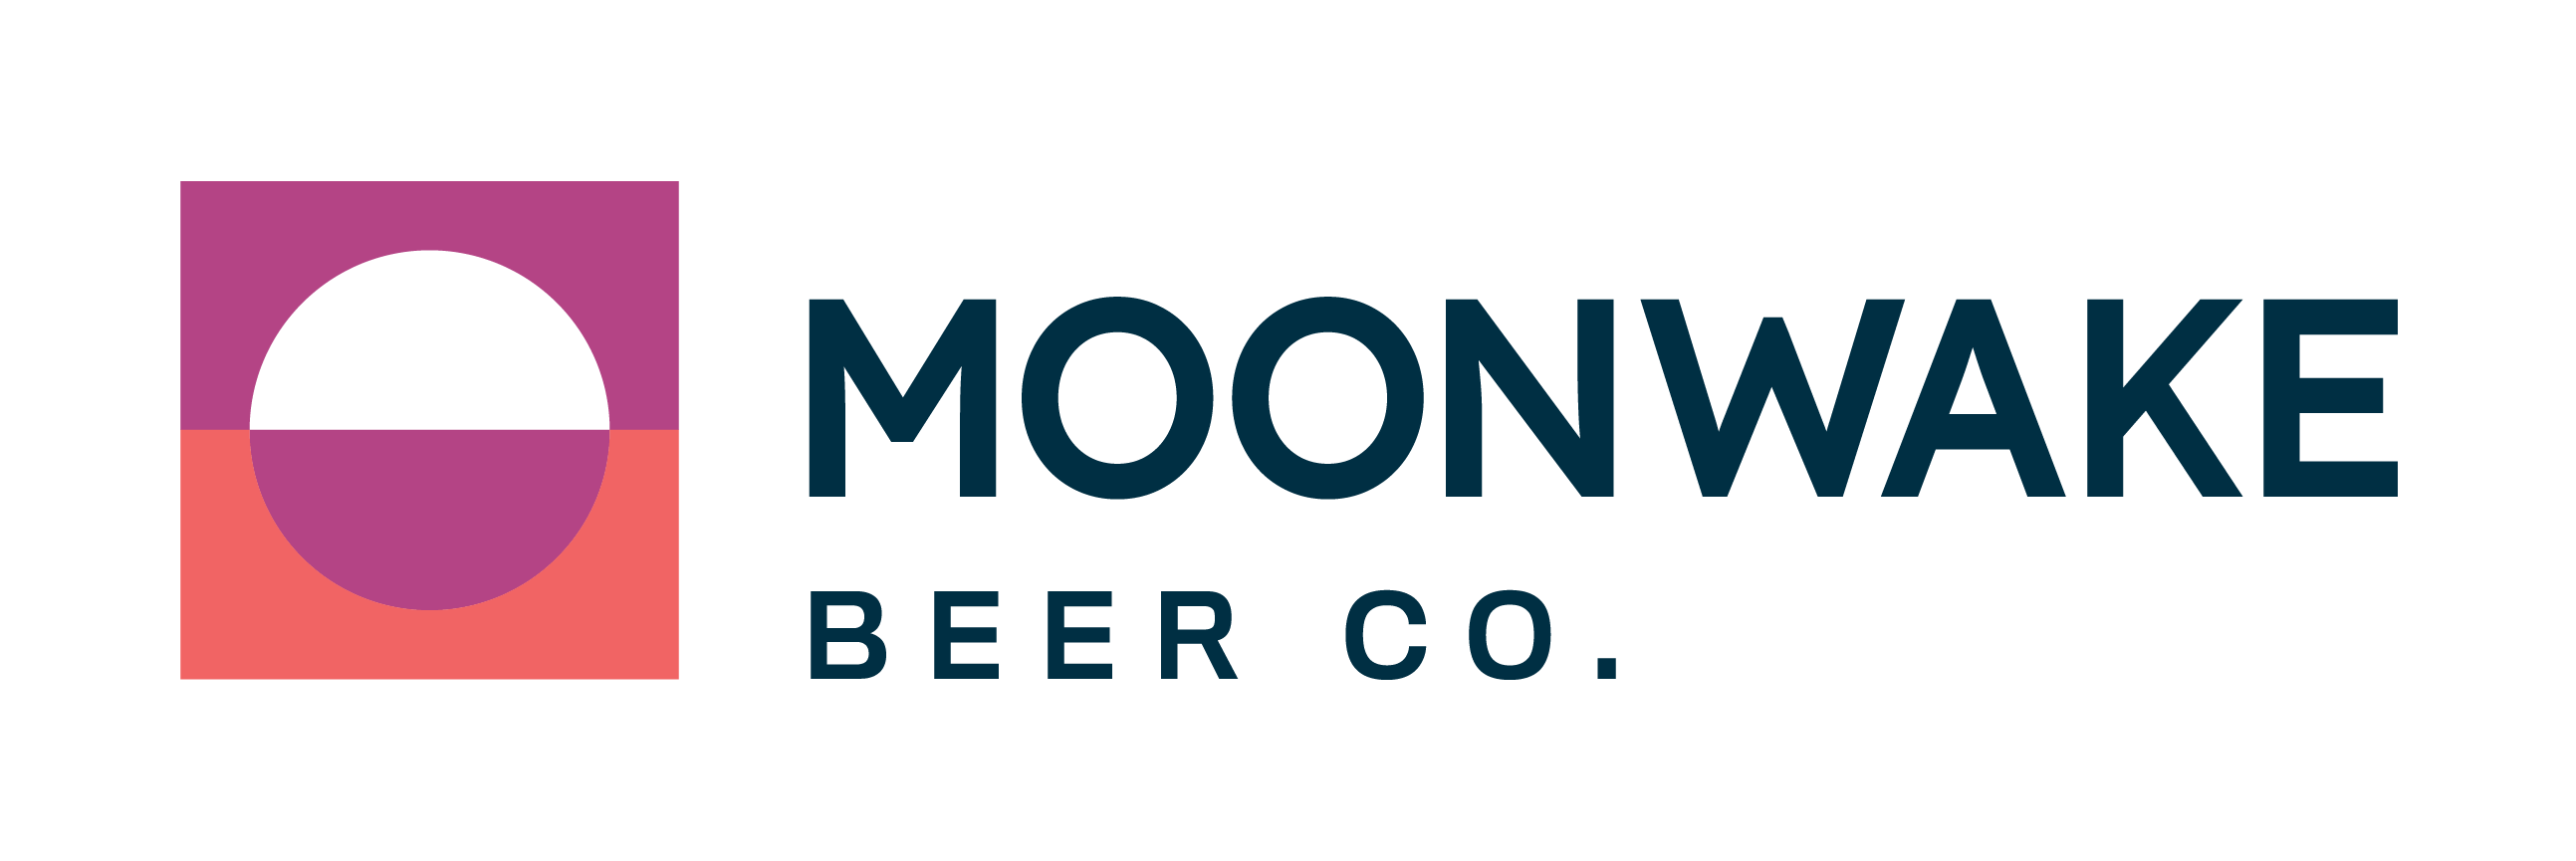 logo for Moonwake Beer Co.